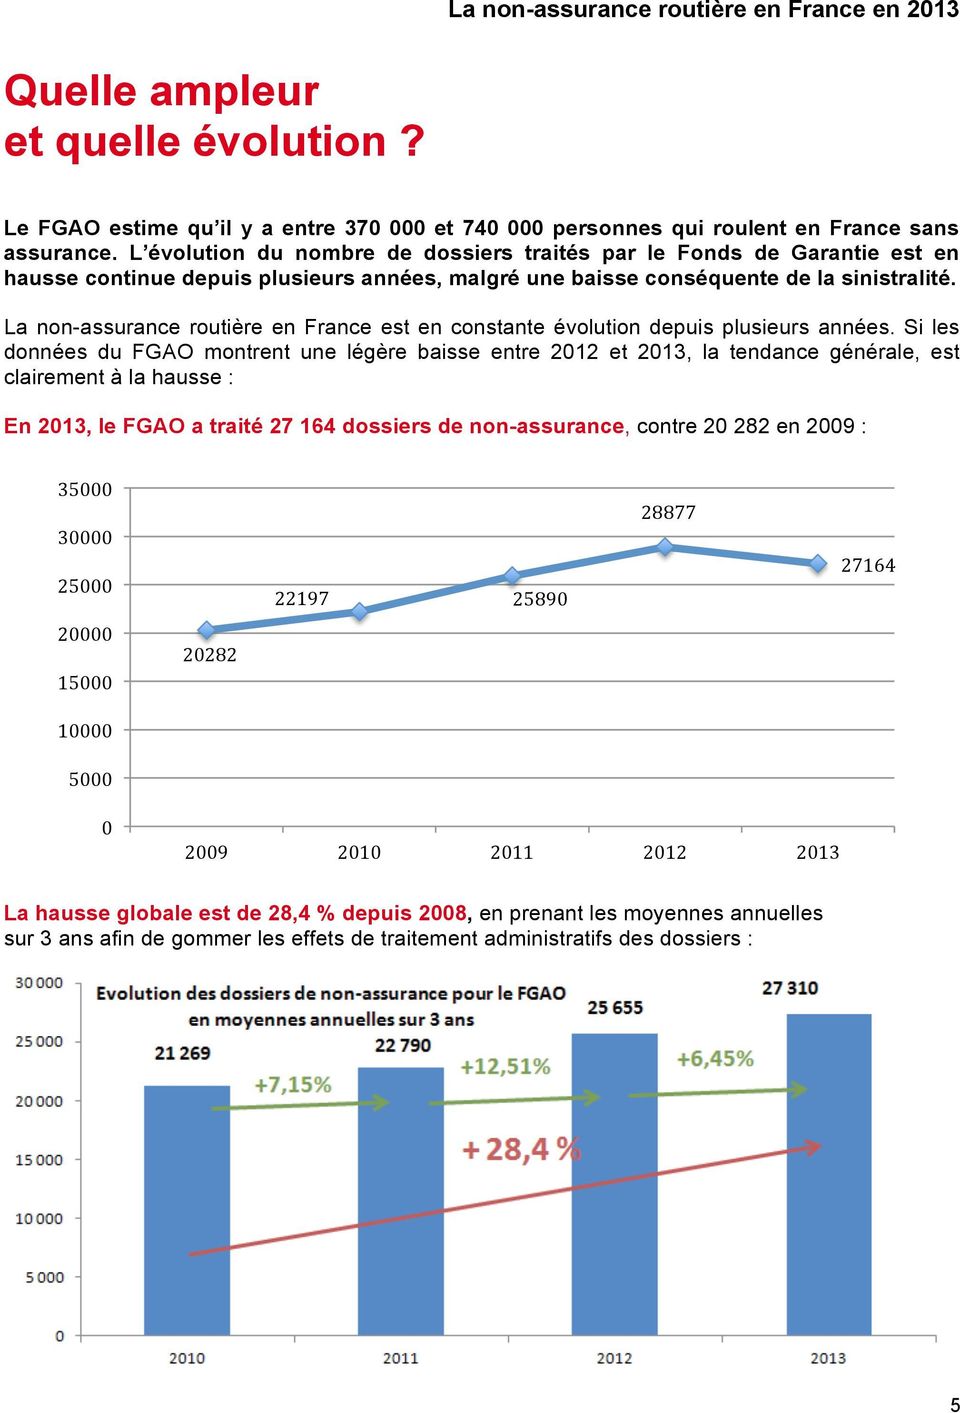 La non-assurance routière en France est en constante évolution depuis plusieurs années.